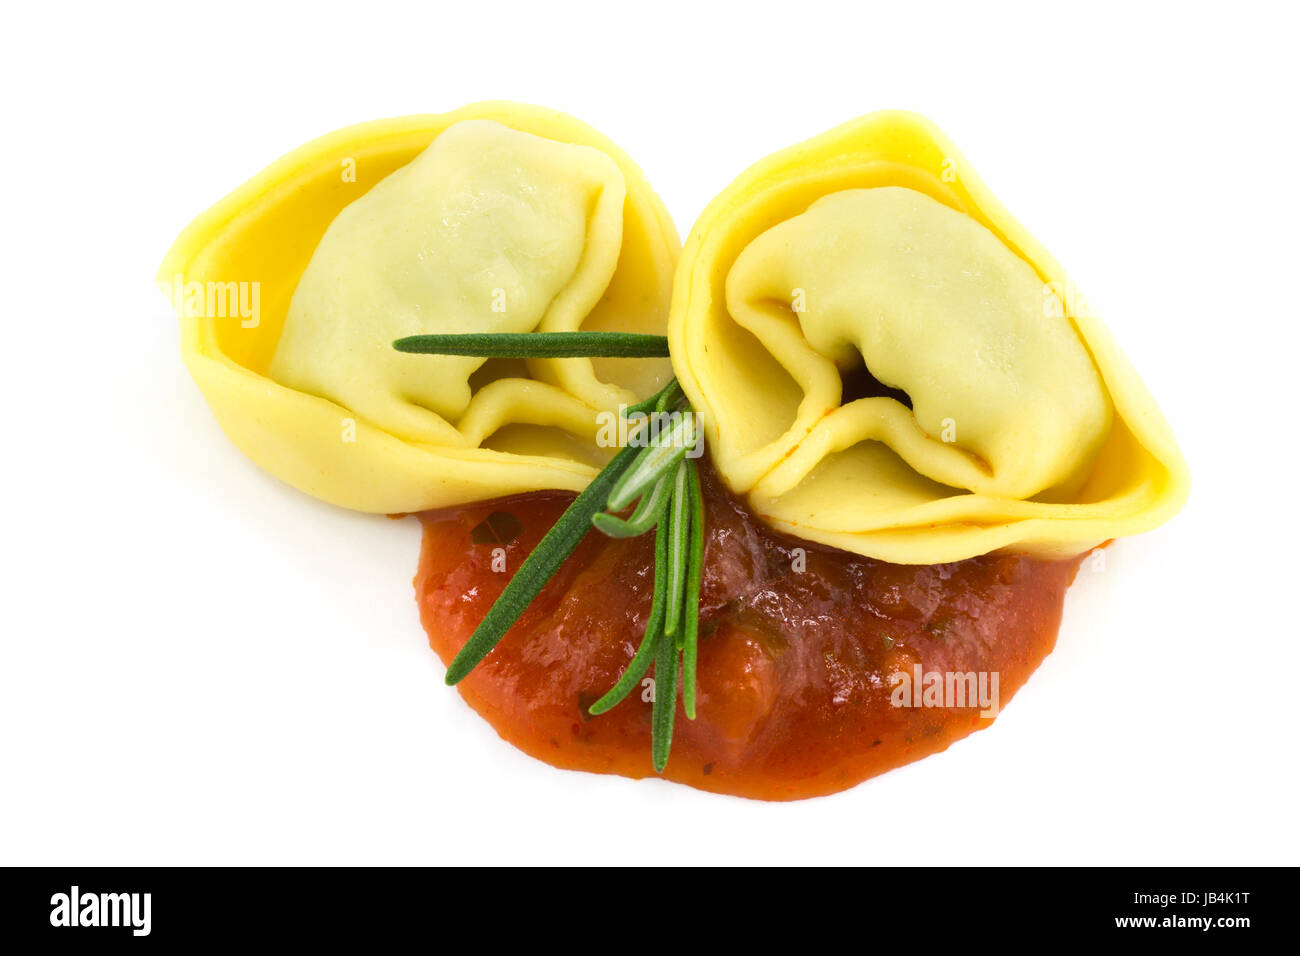 Tortelloni mit Sugo, Nahaufnahme der italienischen Teigware auf weissem Hintergrund Stock Photo